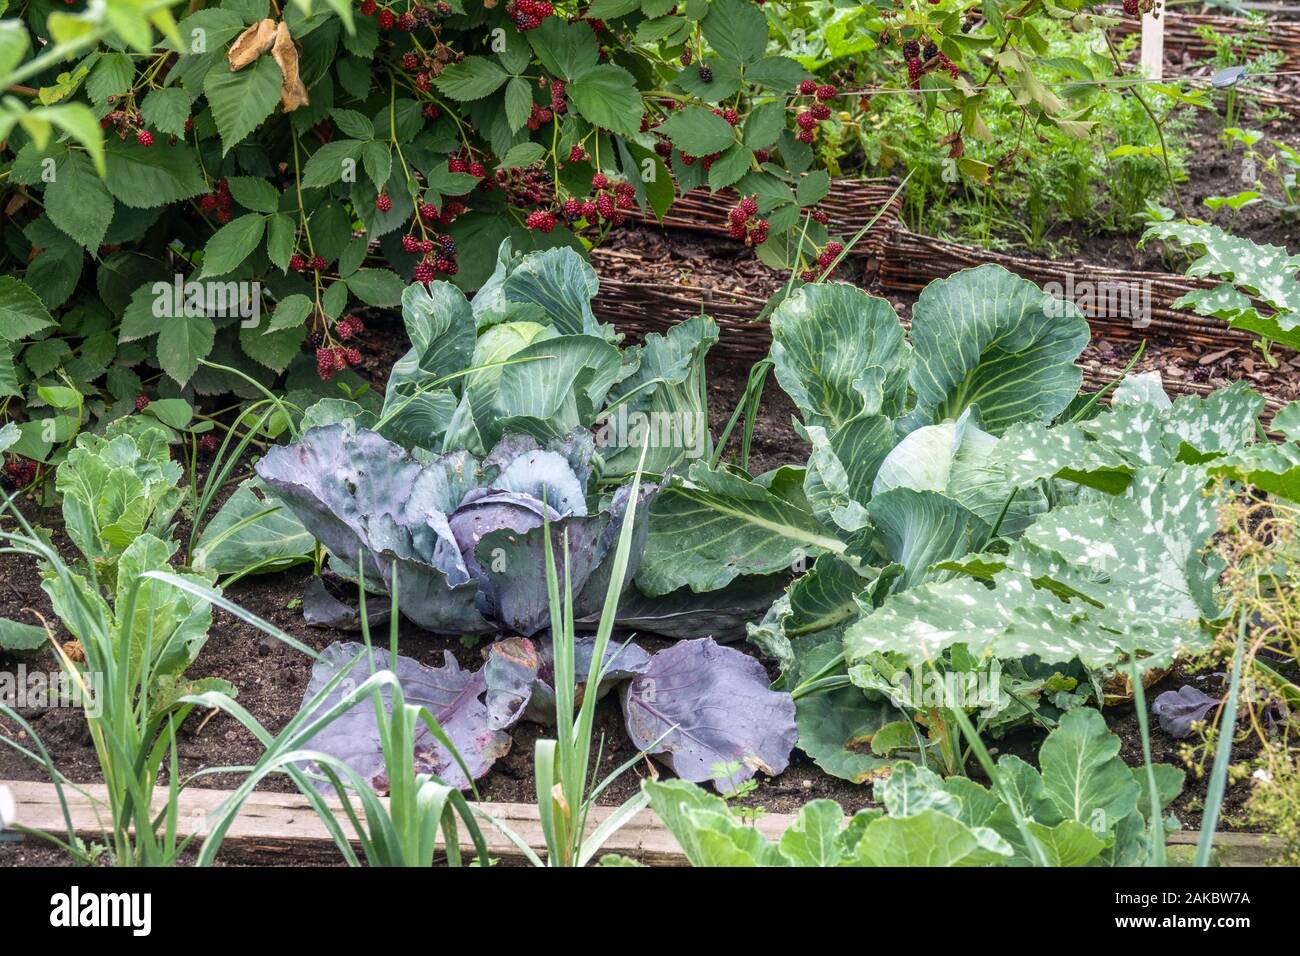 Maduración de vegetales en el jardín a finales del verano, repollo que crece verduras Foto de stock